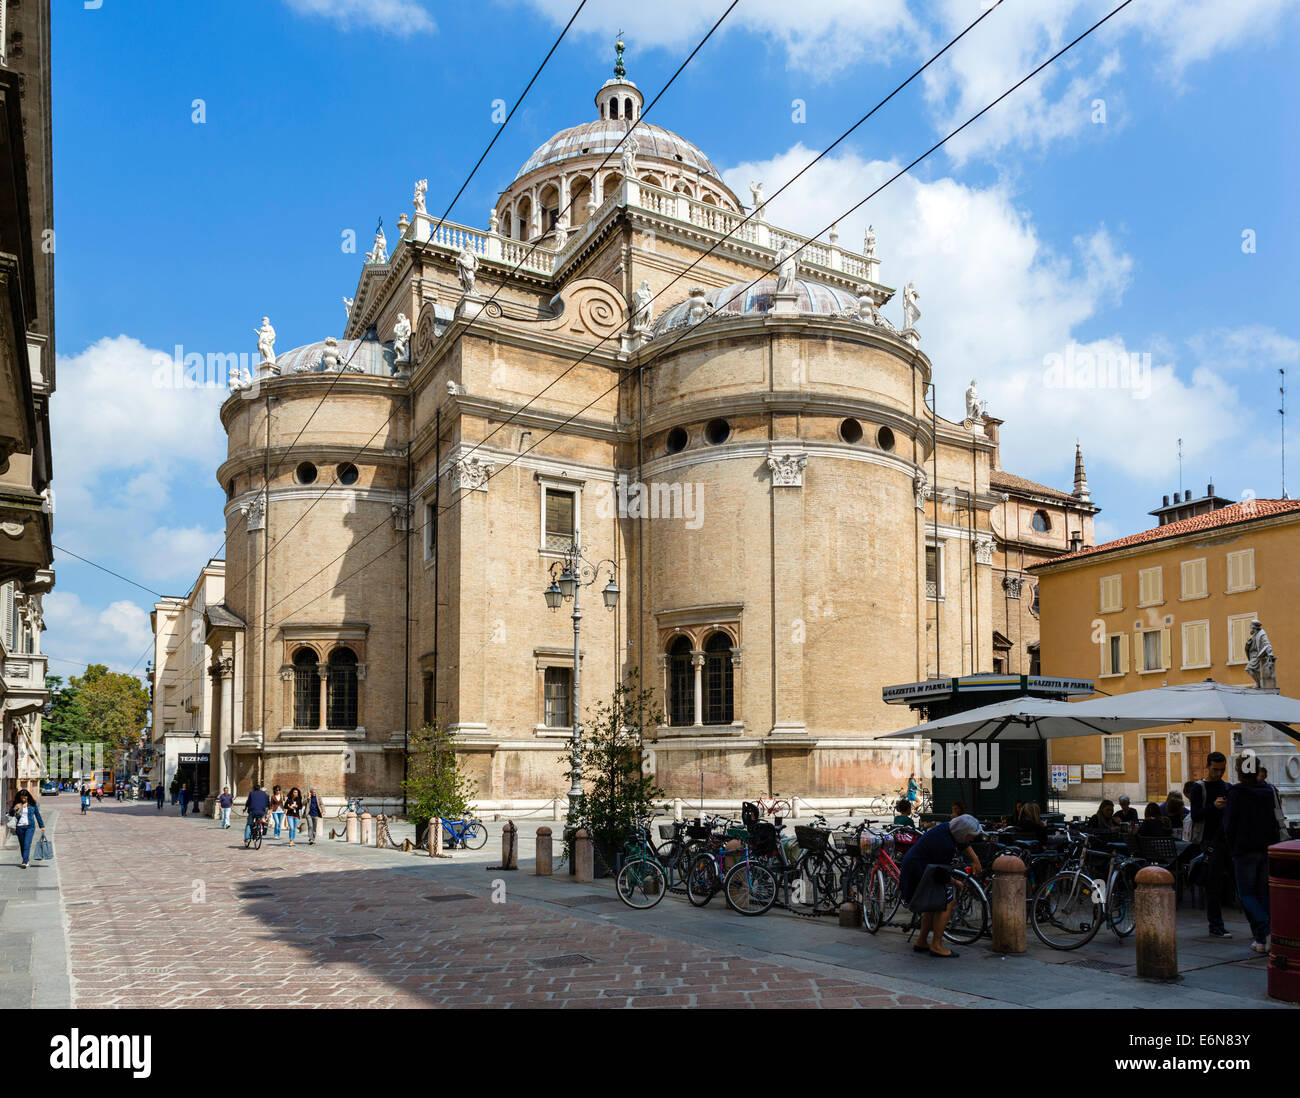 Basilica Santa Maria della Steccata, Parma, Emilia Romagna, Italy Stock Photo